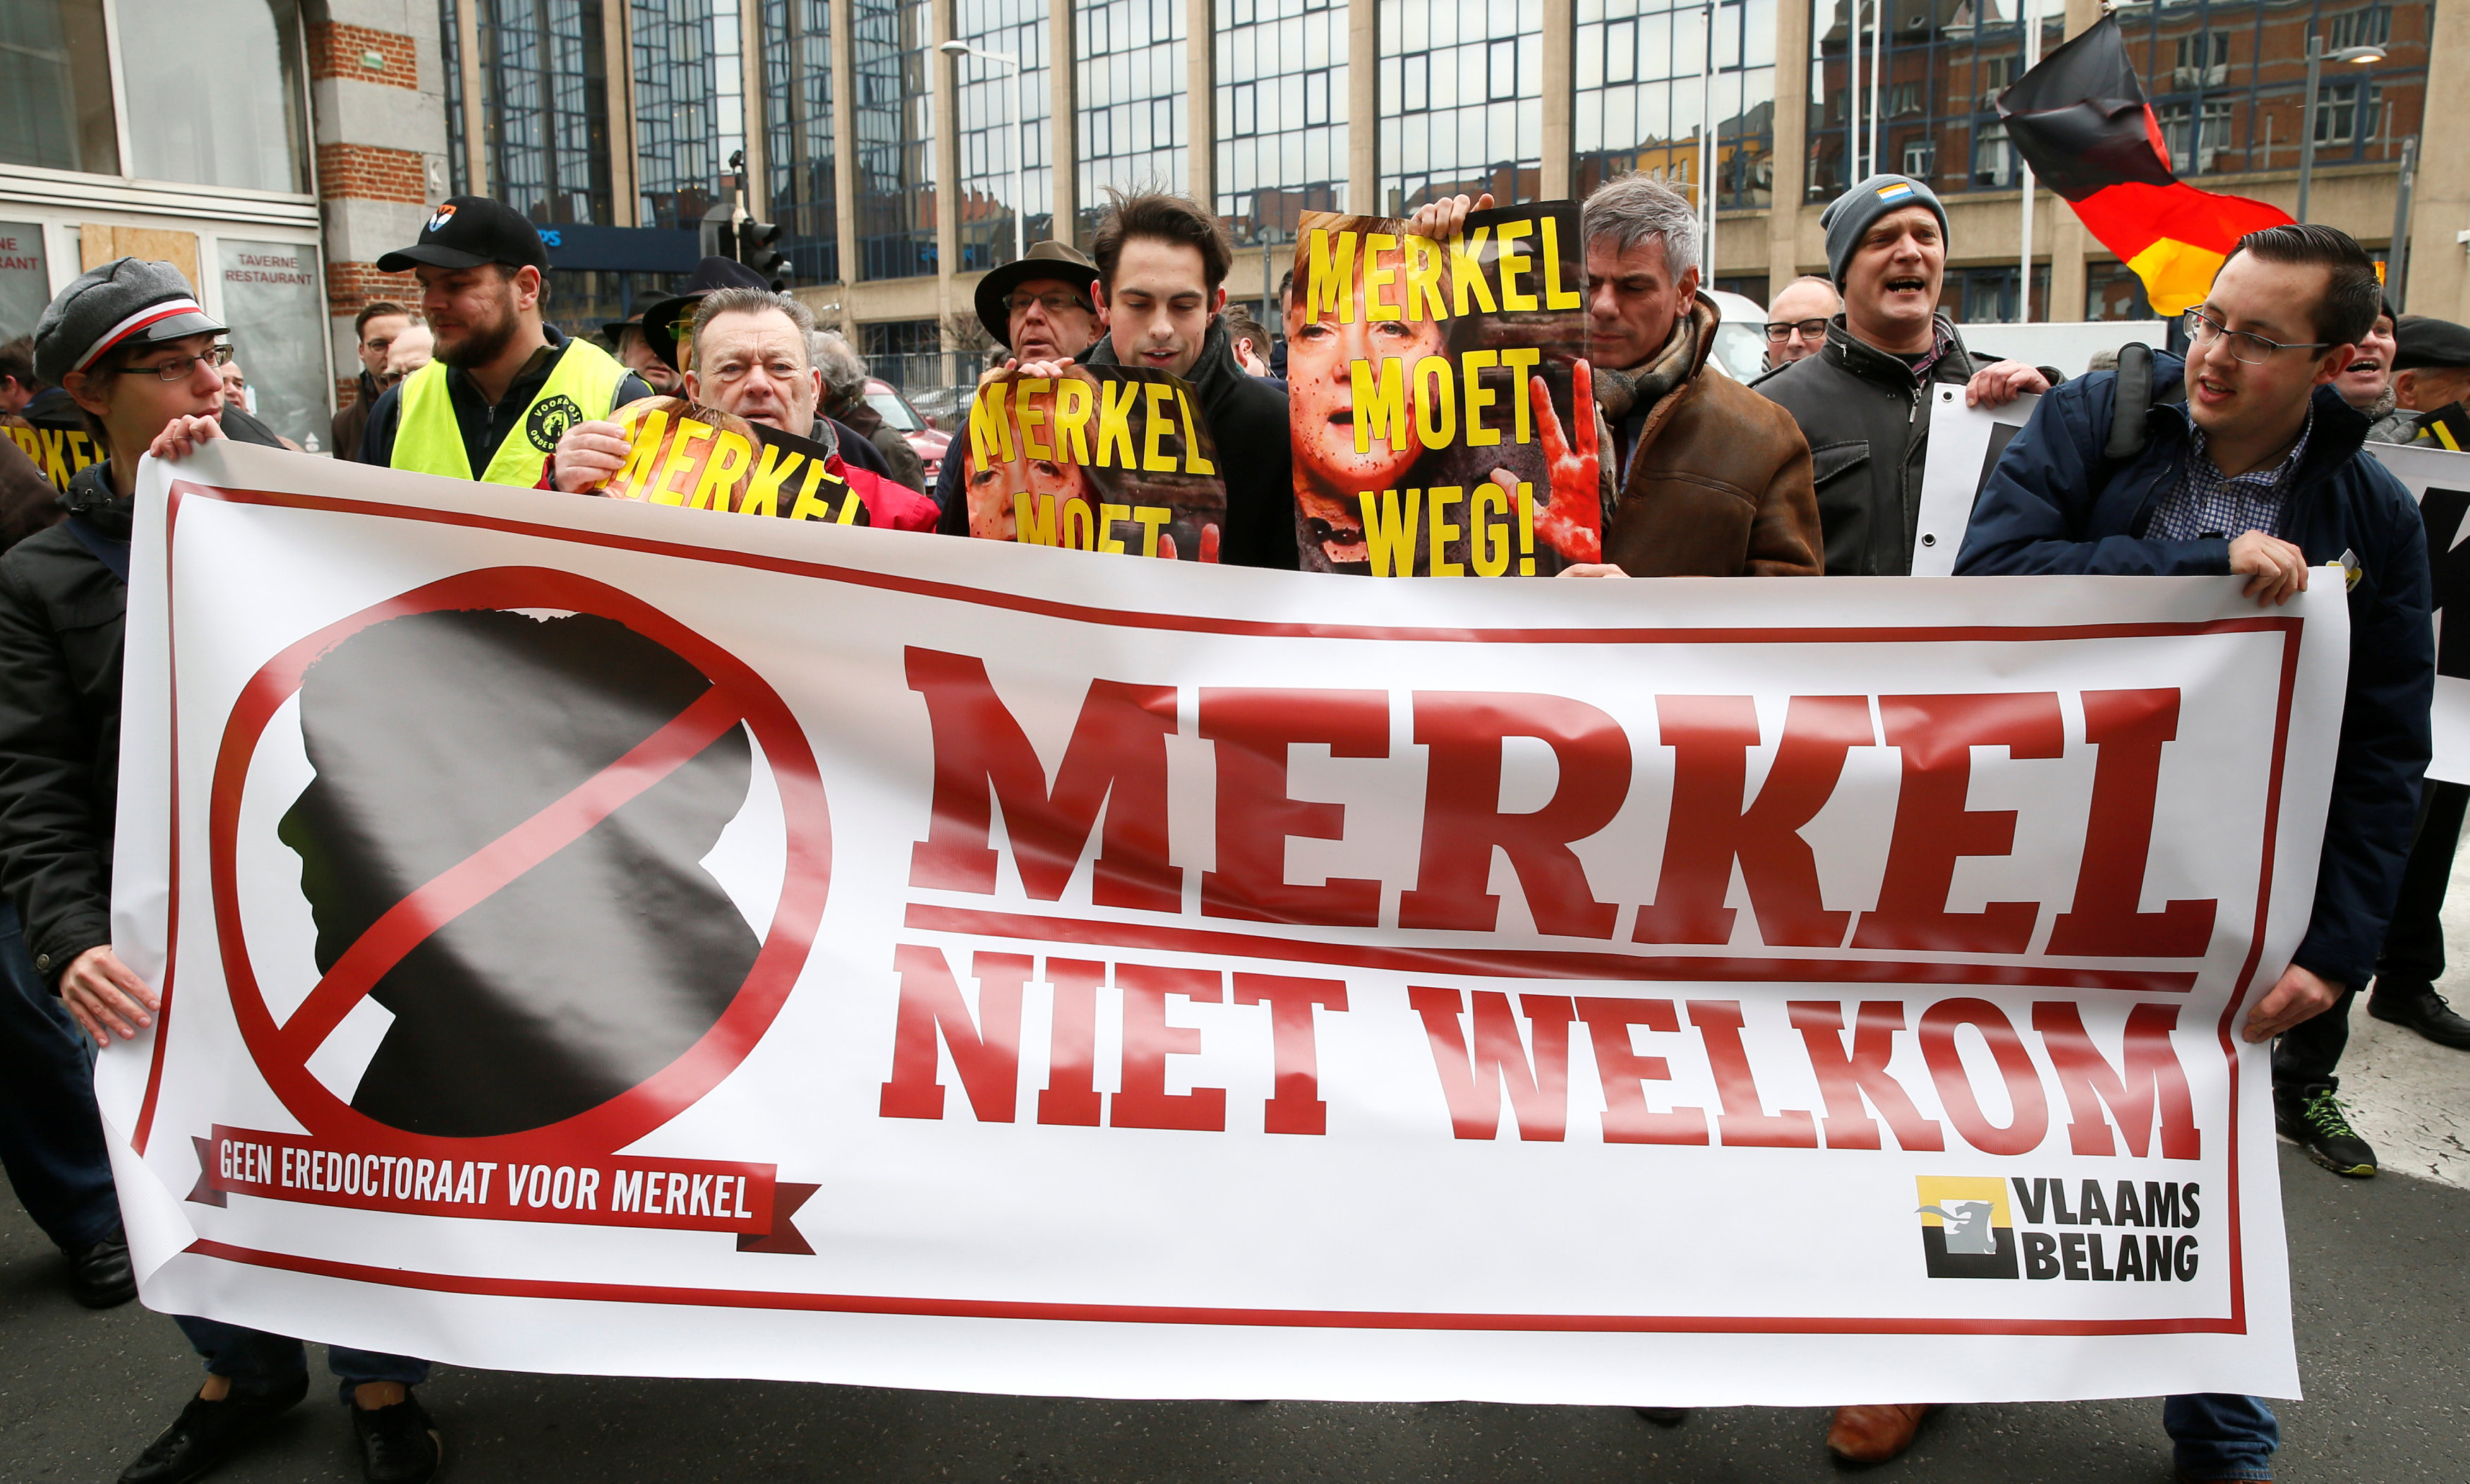 لافتة للمتظاهرين تؤكد عدم ترحيبهم بالمستشار الألمانية فى بلجيكا